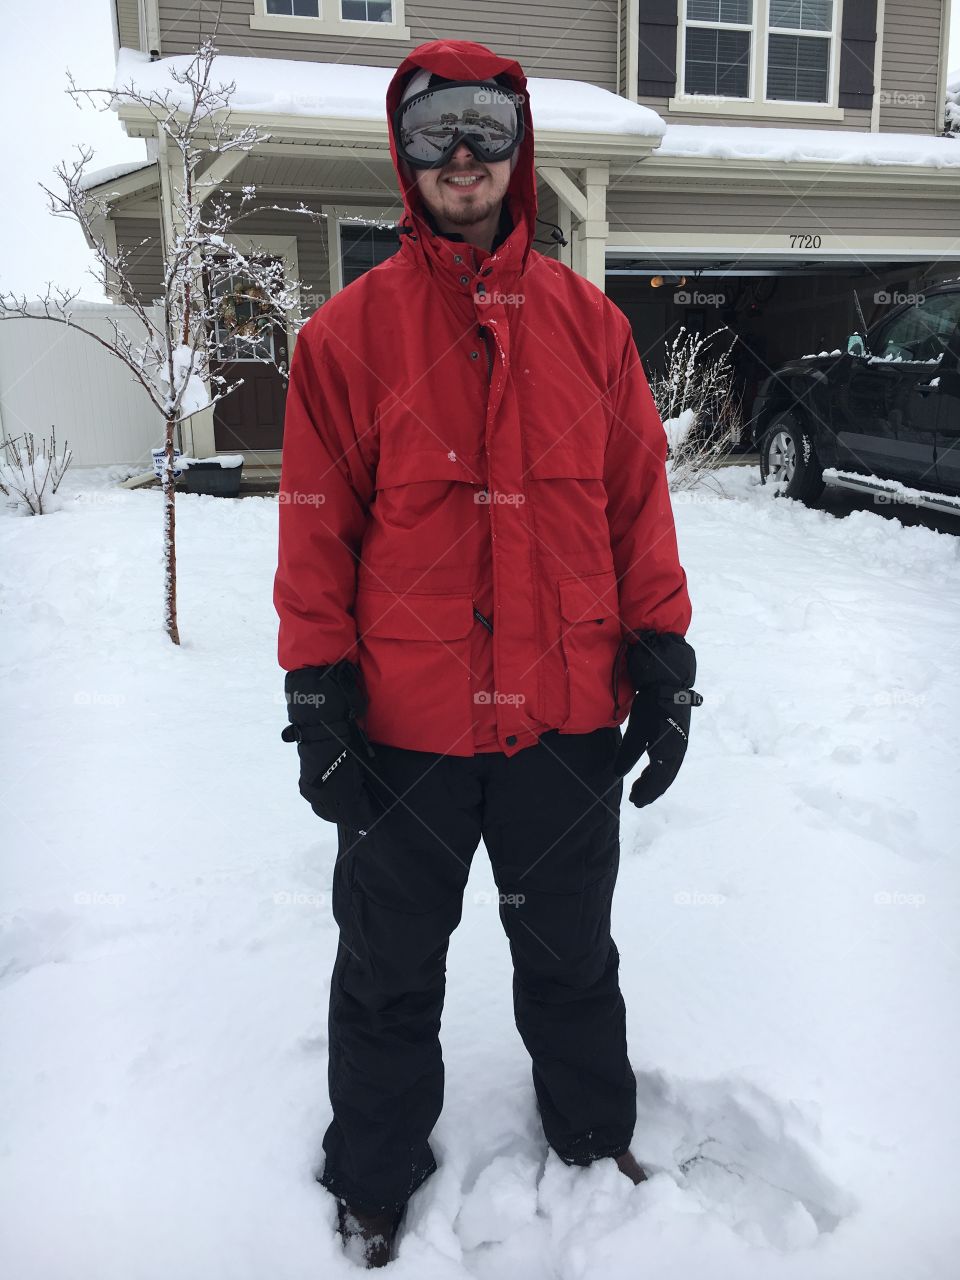 Snow gear